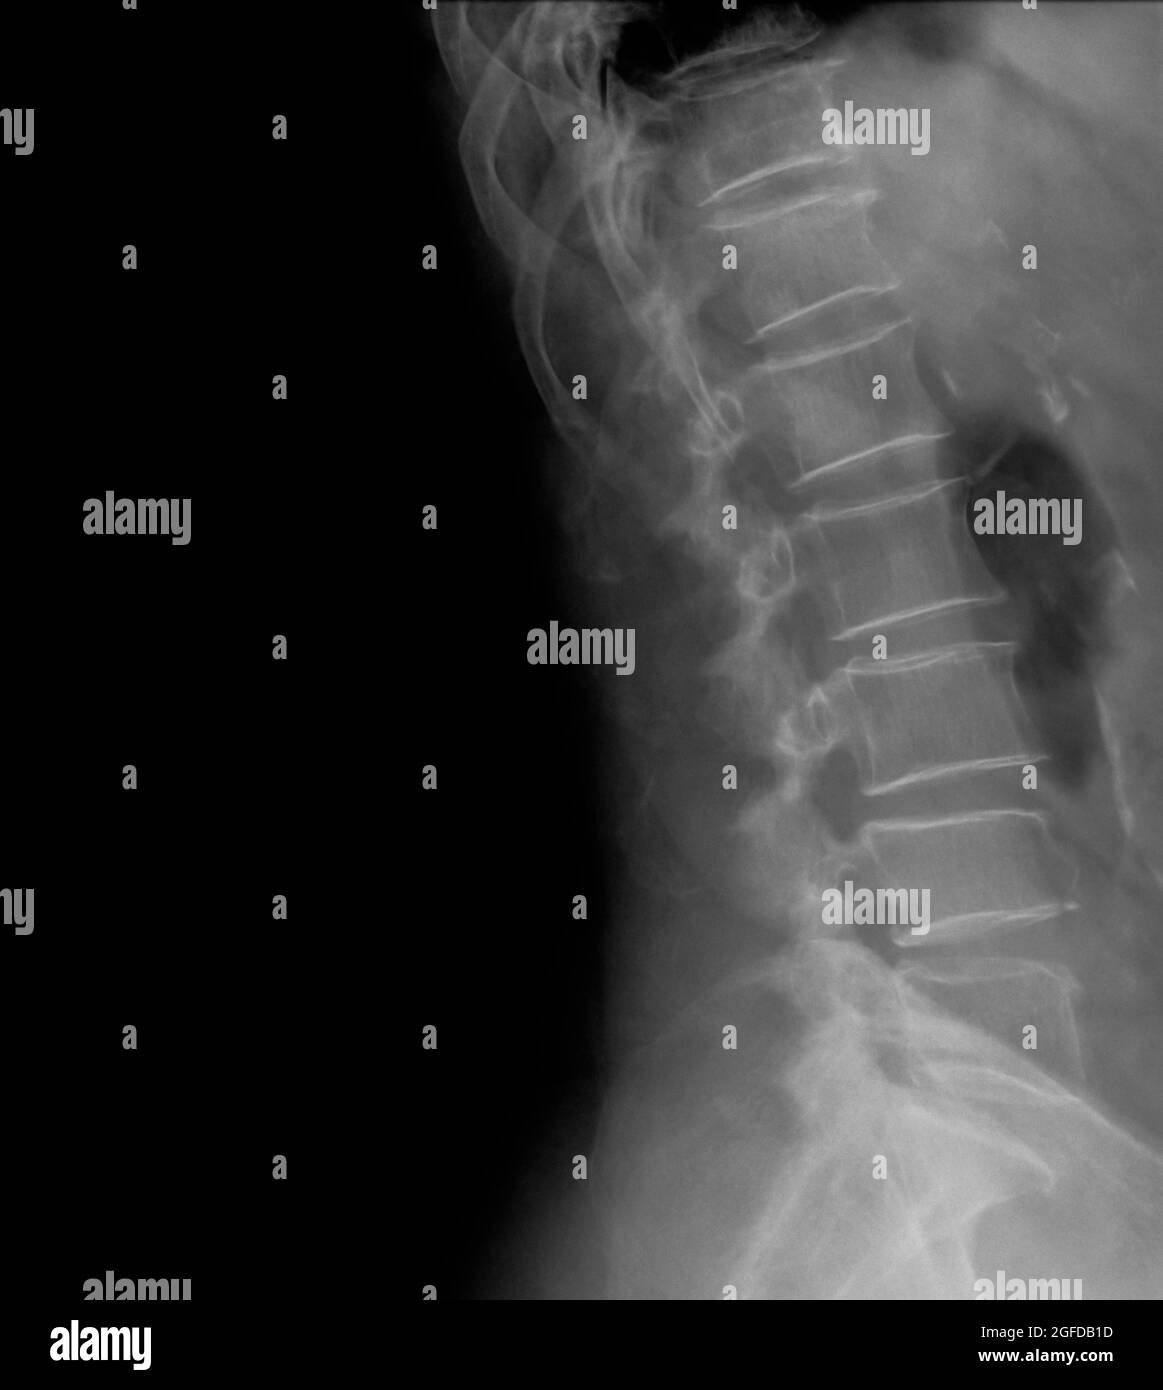 Rachis lombaire humain, vue latérale à rayons X, patient de 77 ans Banque D'Images